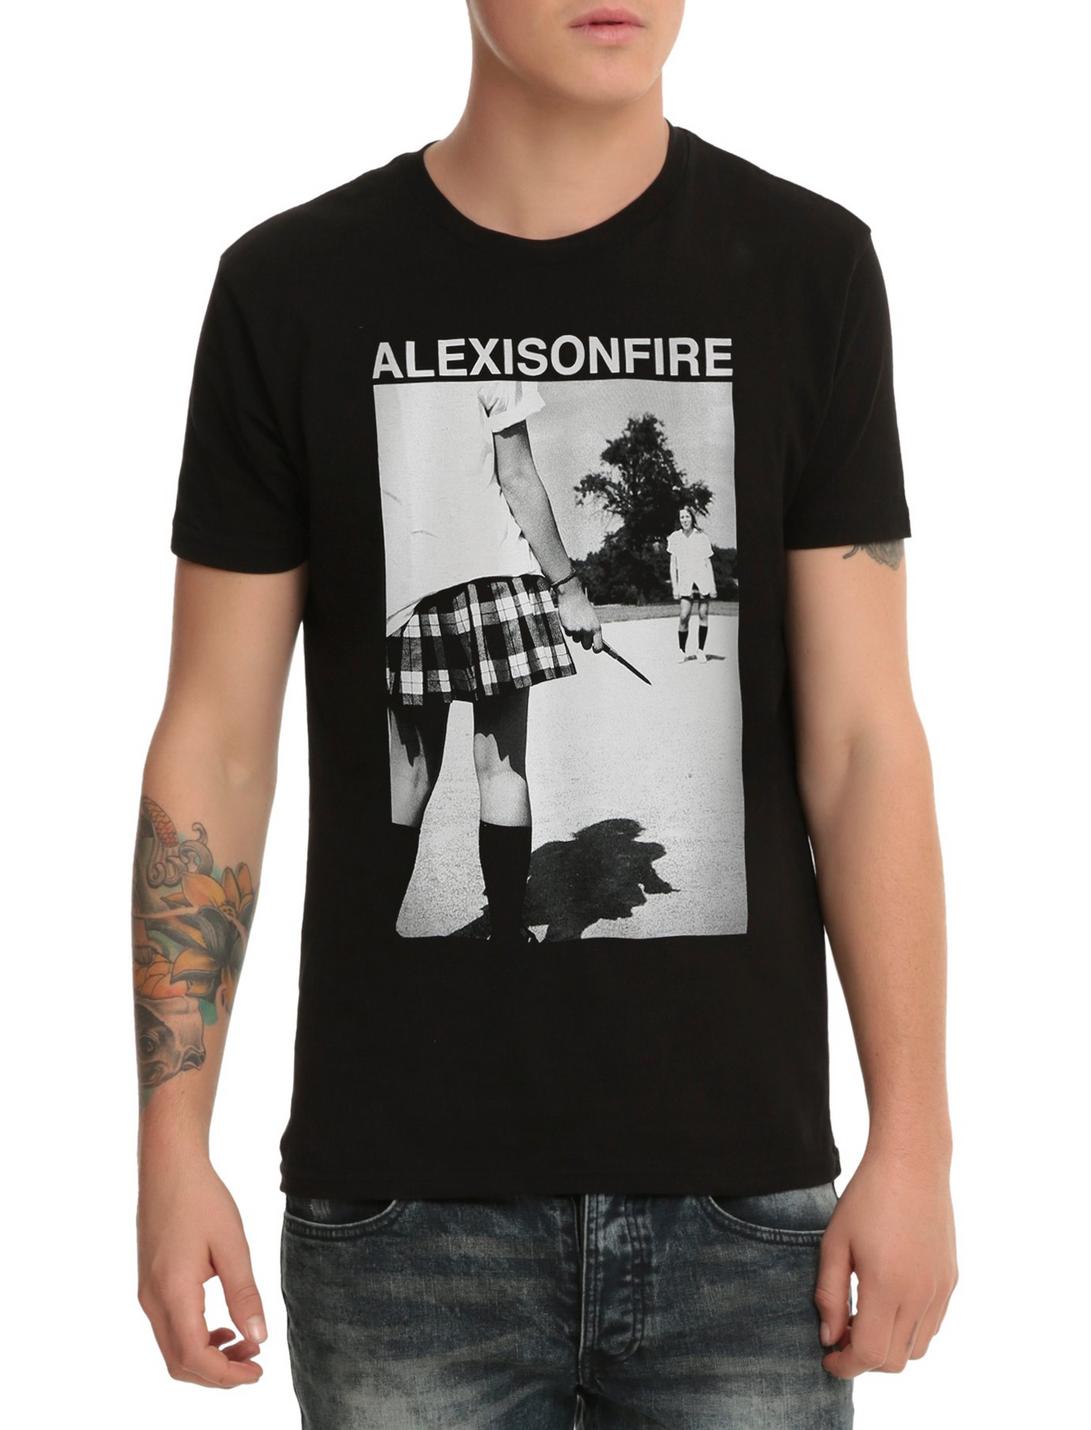 Alexisonfire Album Cover T-Shirt, BLACK, hi-res